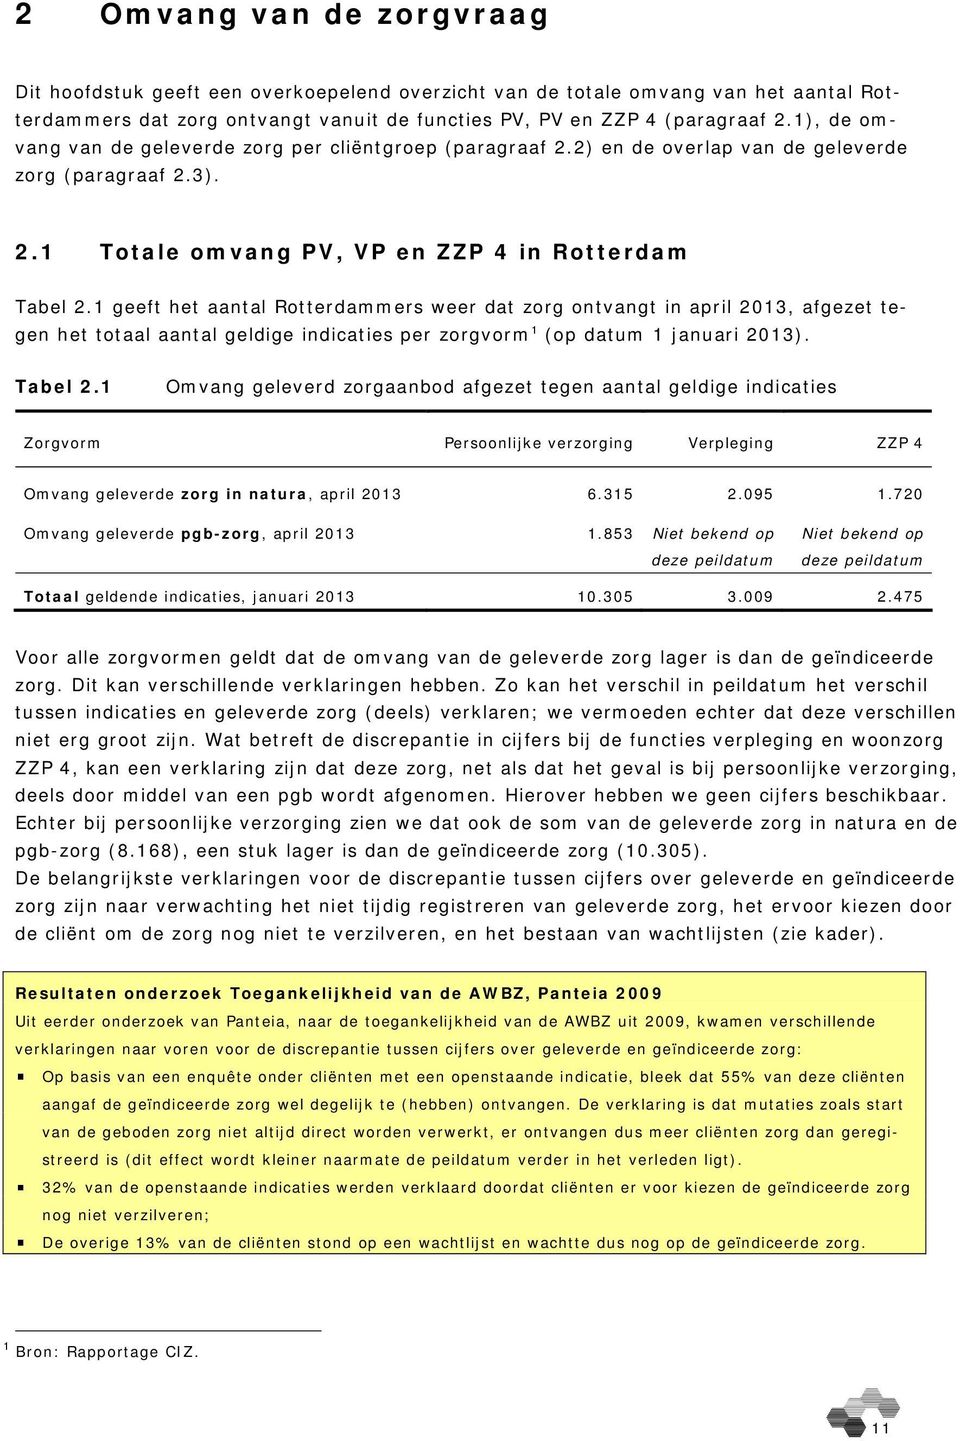 1 geeft het aantal Rotterdammers weer dat zorg ontvangt in april 2013, afgezet tegen het totaal aantal geldige indicaties per zorgvorm 1 (op datum 1 januari 2013). Tabel 2.